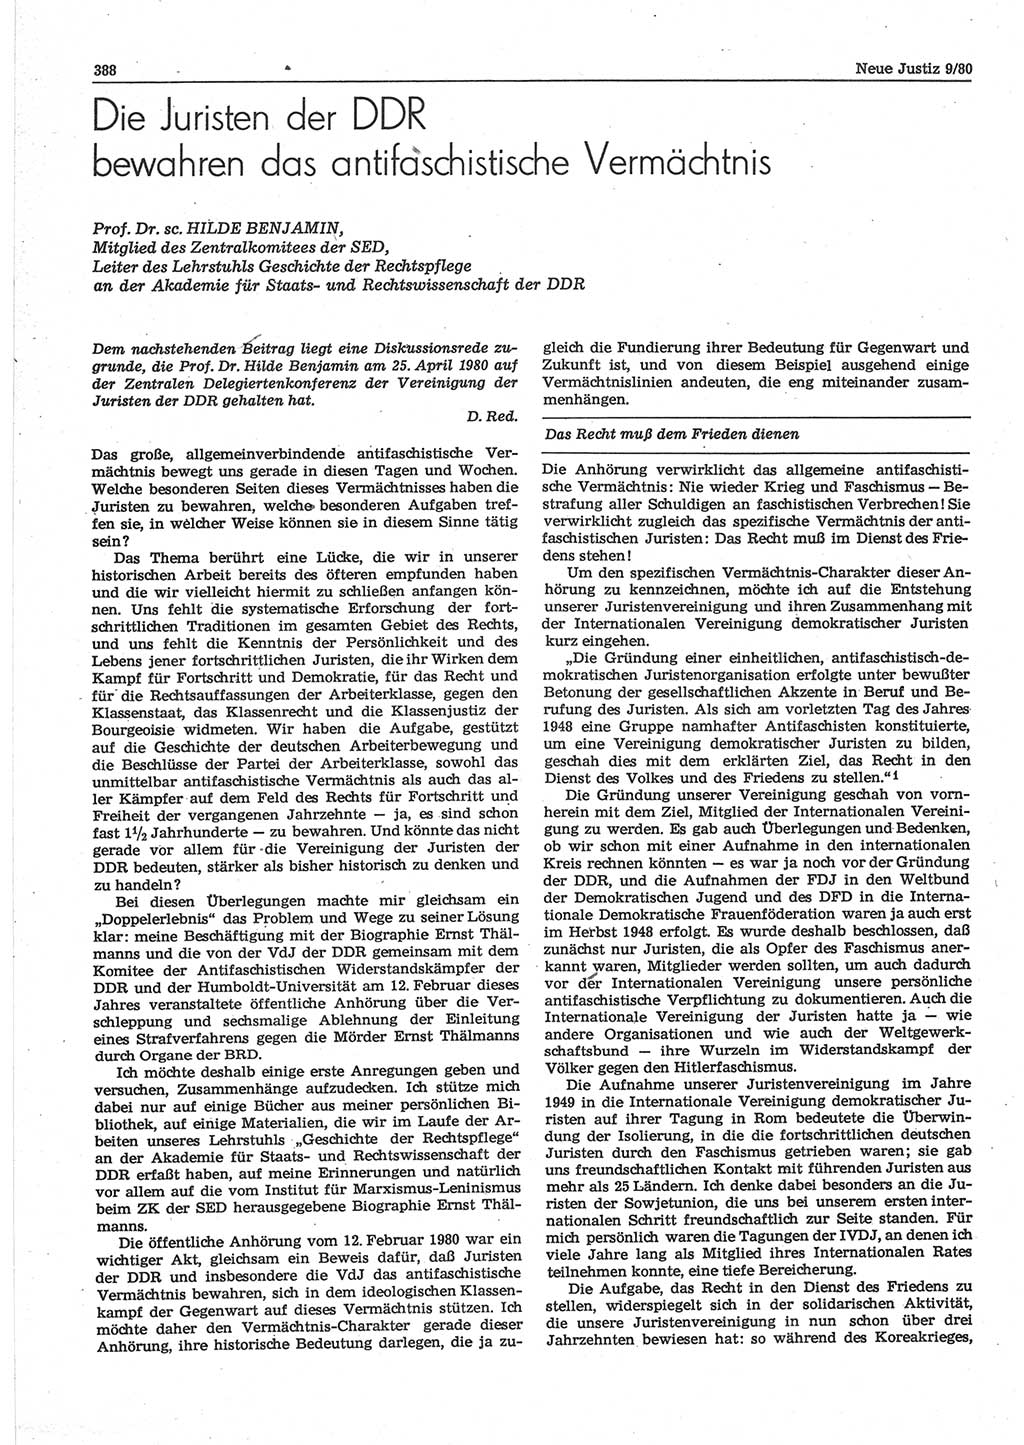 Neue Justiz (NJ), Zeitschrift für sozialistisches Recht und Gesetzlichkeit [Deutsche Demokratische Republik (DDR)], 34. Jahrgang 1980, Seite 388 (NJ DDR 1980, S. 388)